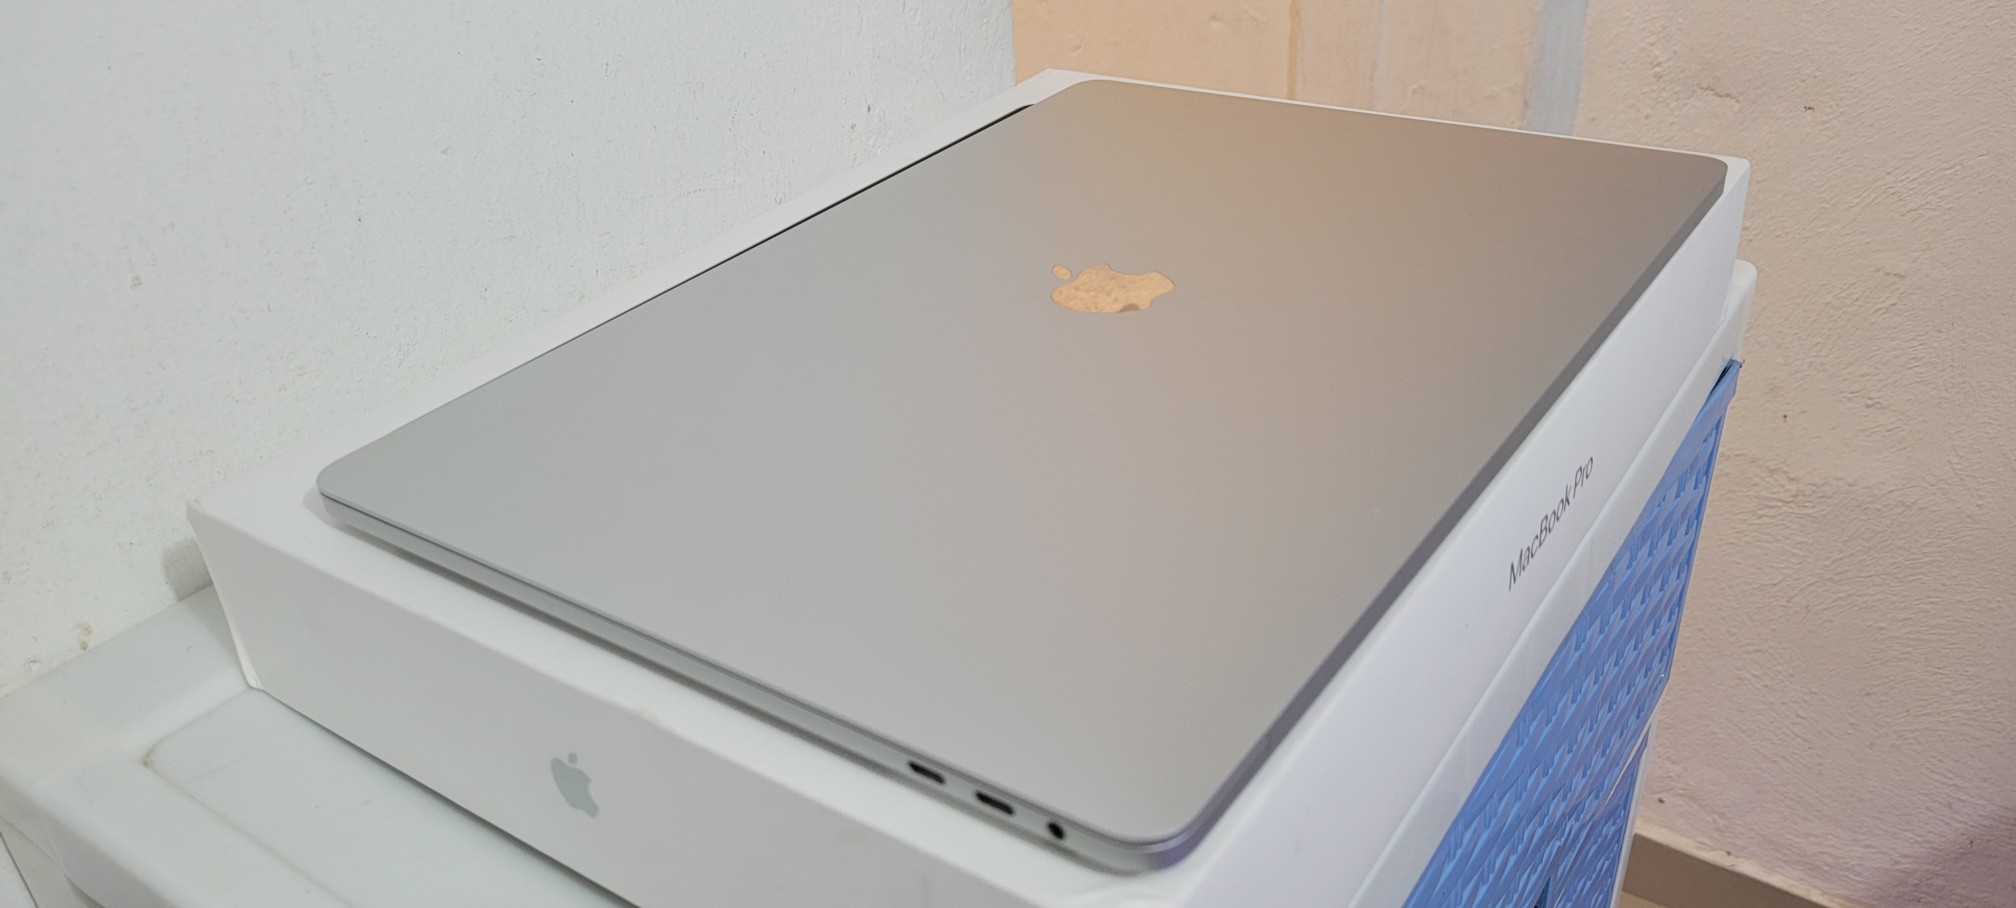 computadoras y laptops - Macbook Pro 15.4 Pulg Core i7 Ram 16gb Disco 256gb Año 2018 Doble Video Graphics 2